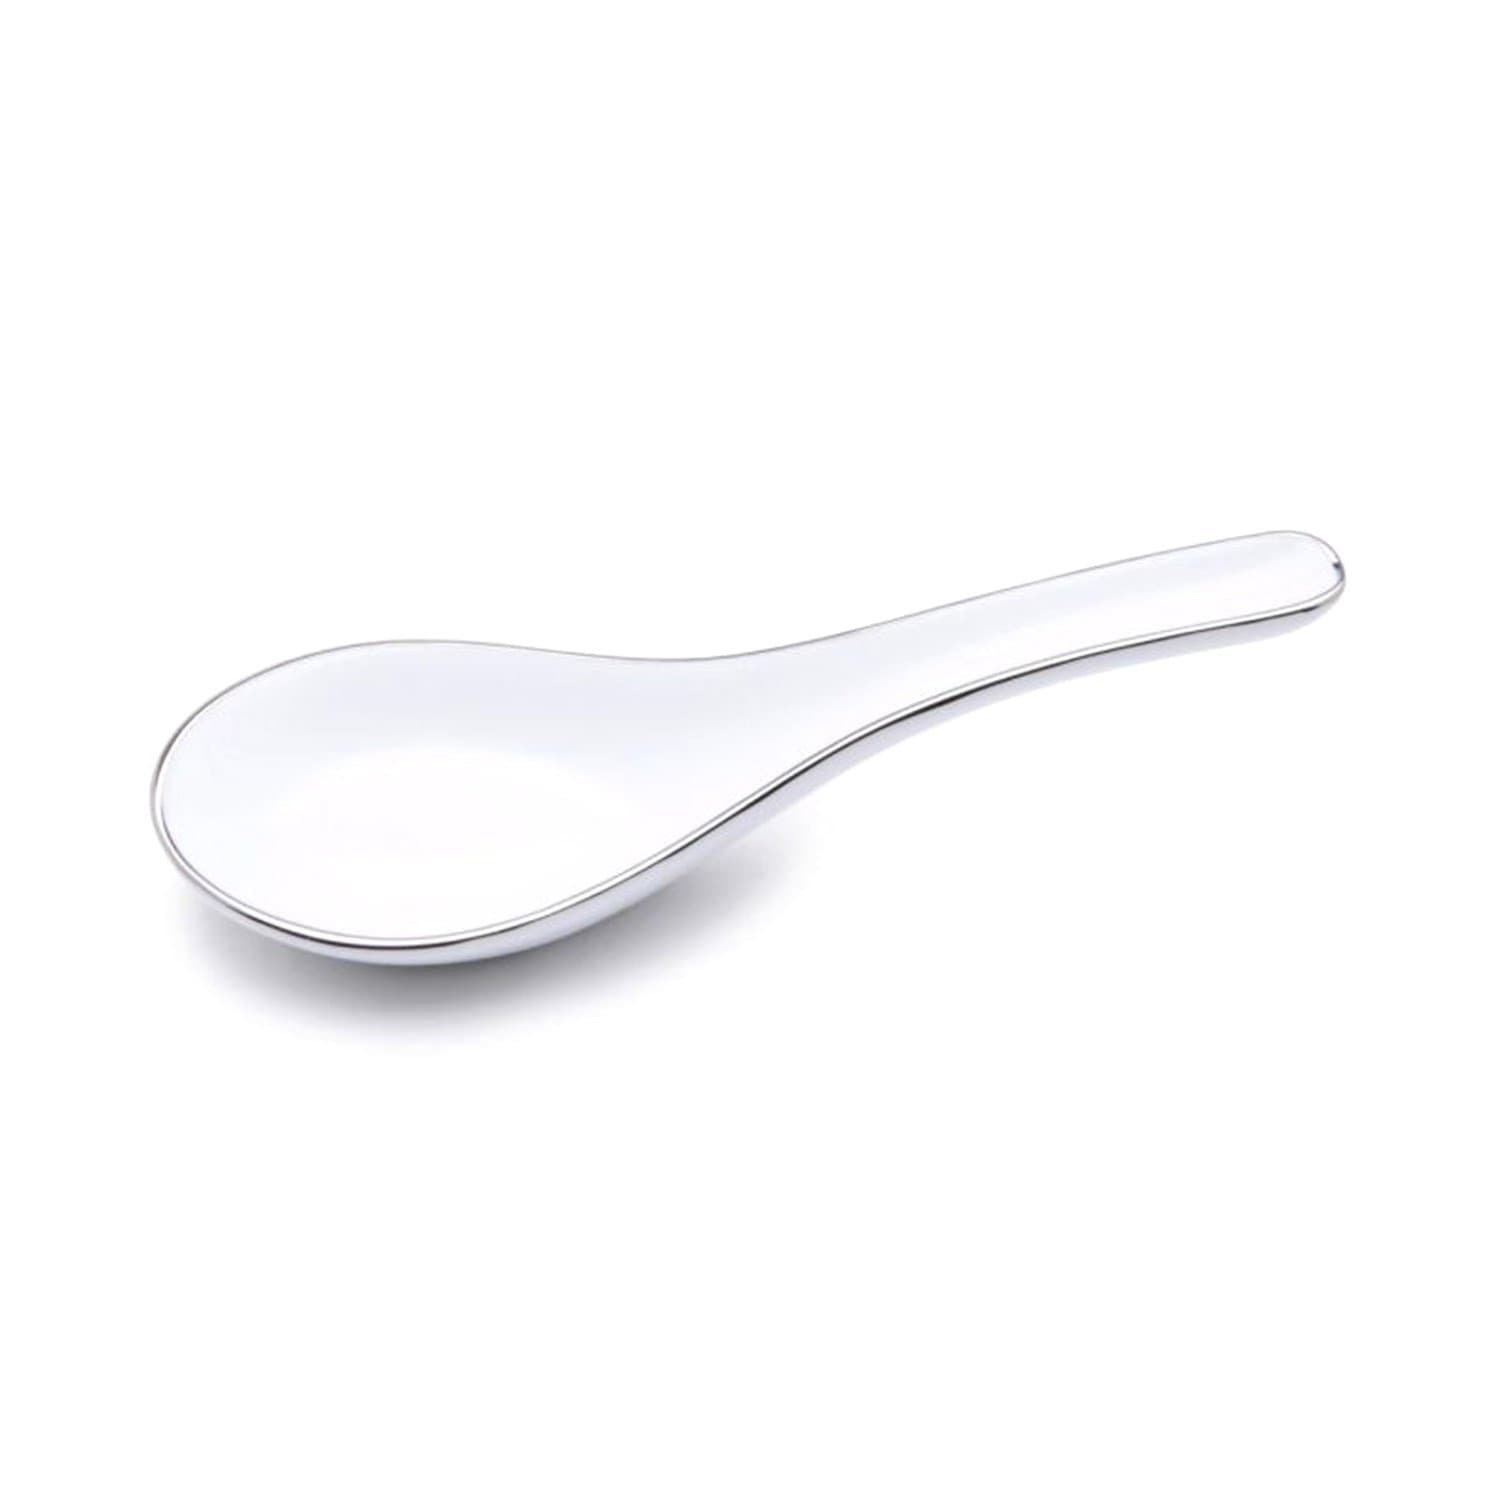 Dankotuwa Meldy Green Soup Spoon - White, 14 Cm - MELDYG-0221 - Jashanmal Home